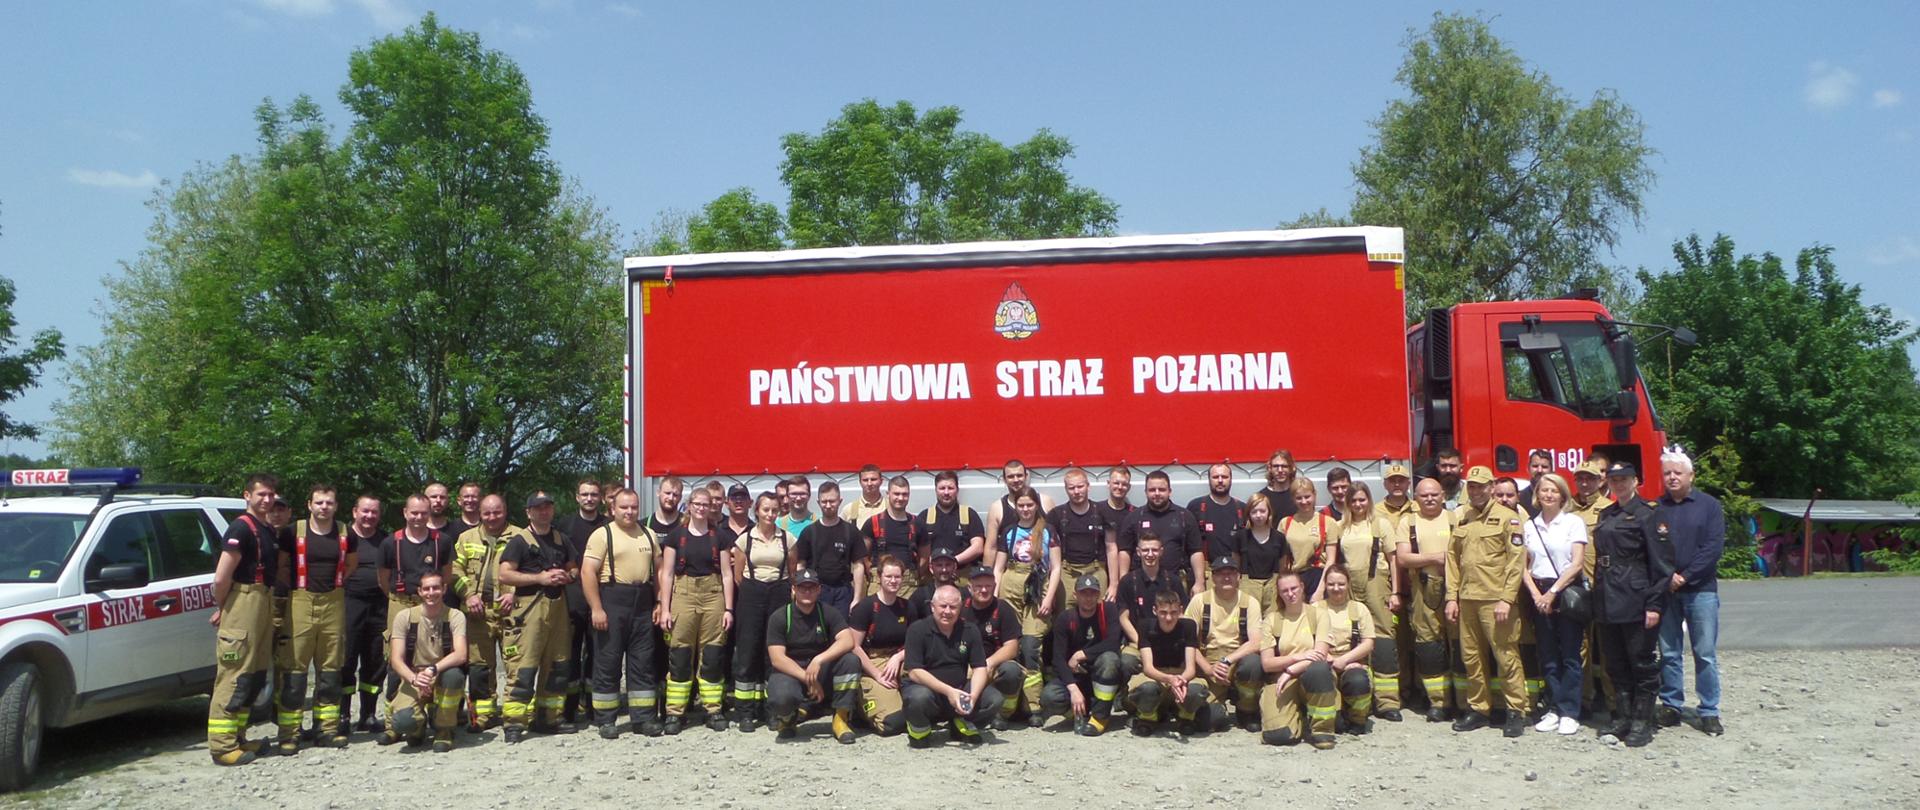 Zdjęcie grupowe wszystkich uczestników ćwiczeń. W tle samochód strażacki z napisem na czerwonej plandece Państwowa Straż Pożarna i logo PSP. Za nim drzewa.